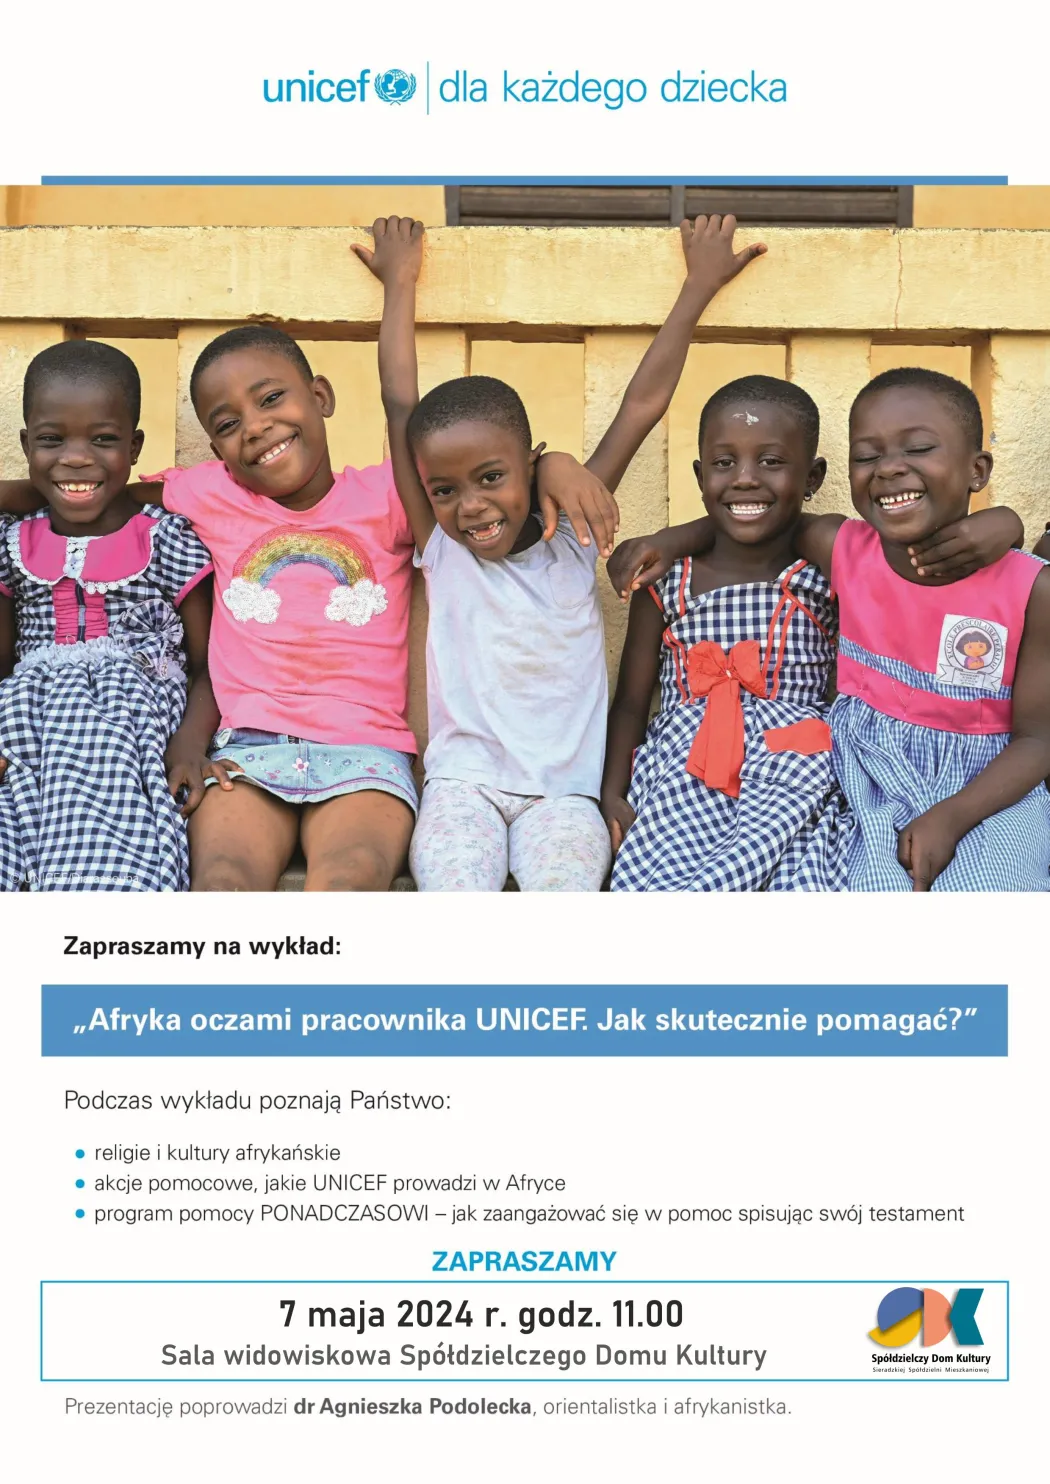 Afryka oczami pracownika UNICEF. Jak skutecznie pomagać?